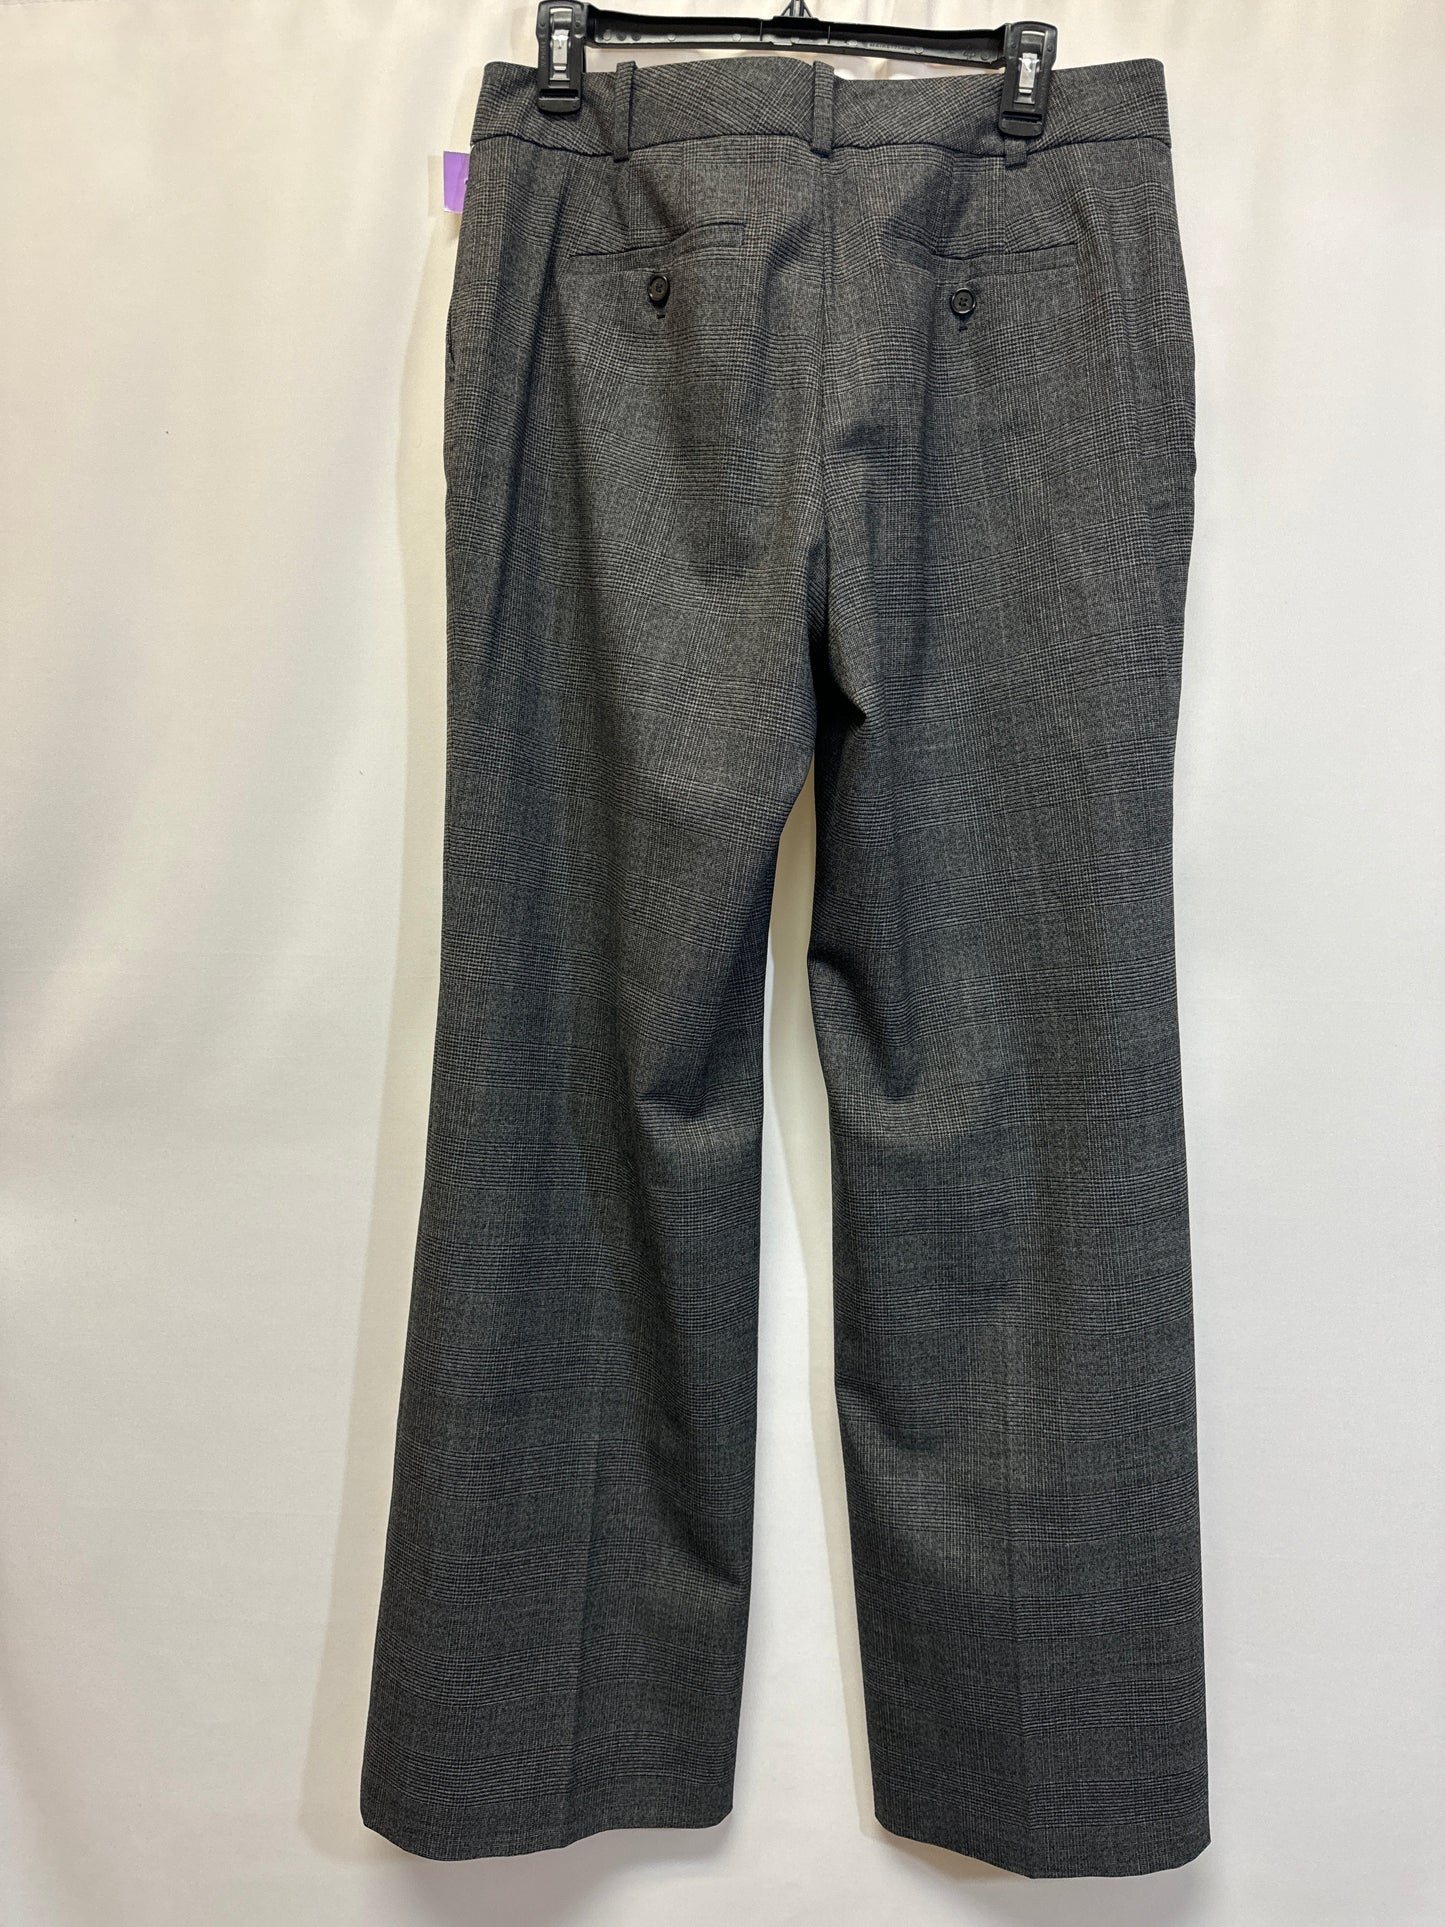 Grey Pants Dress Ann Taylor, Size 10